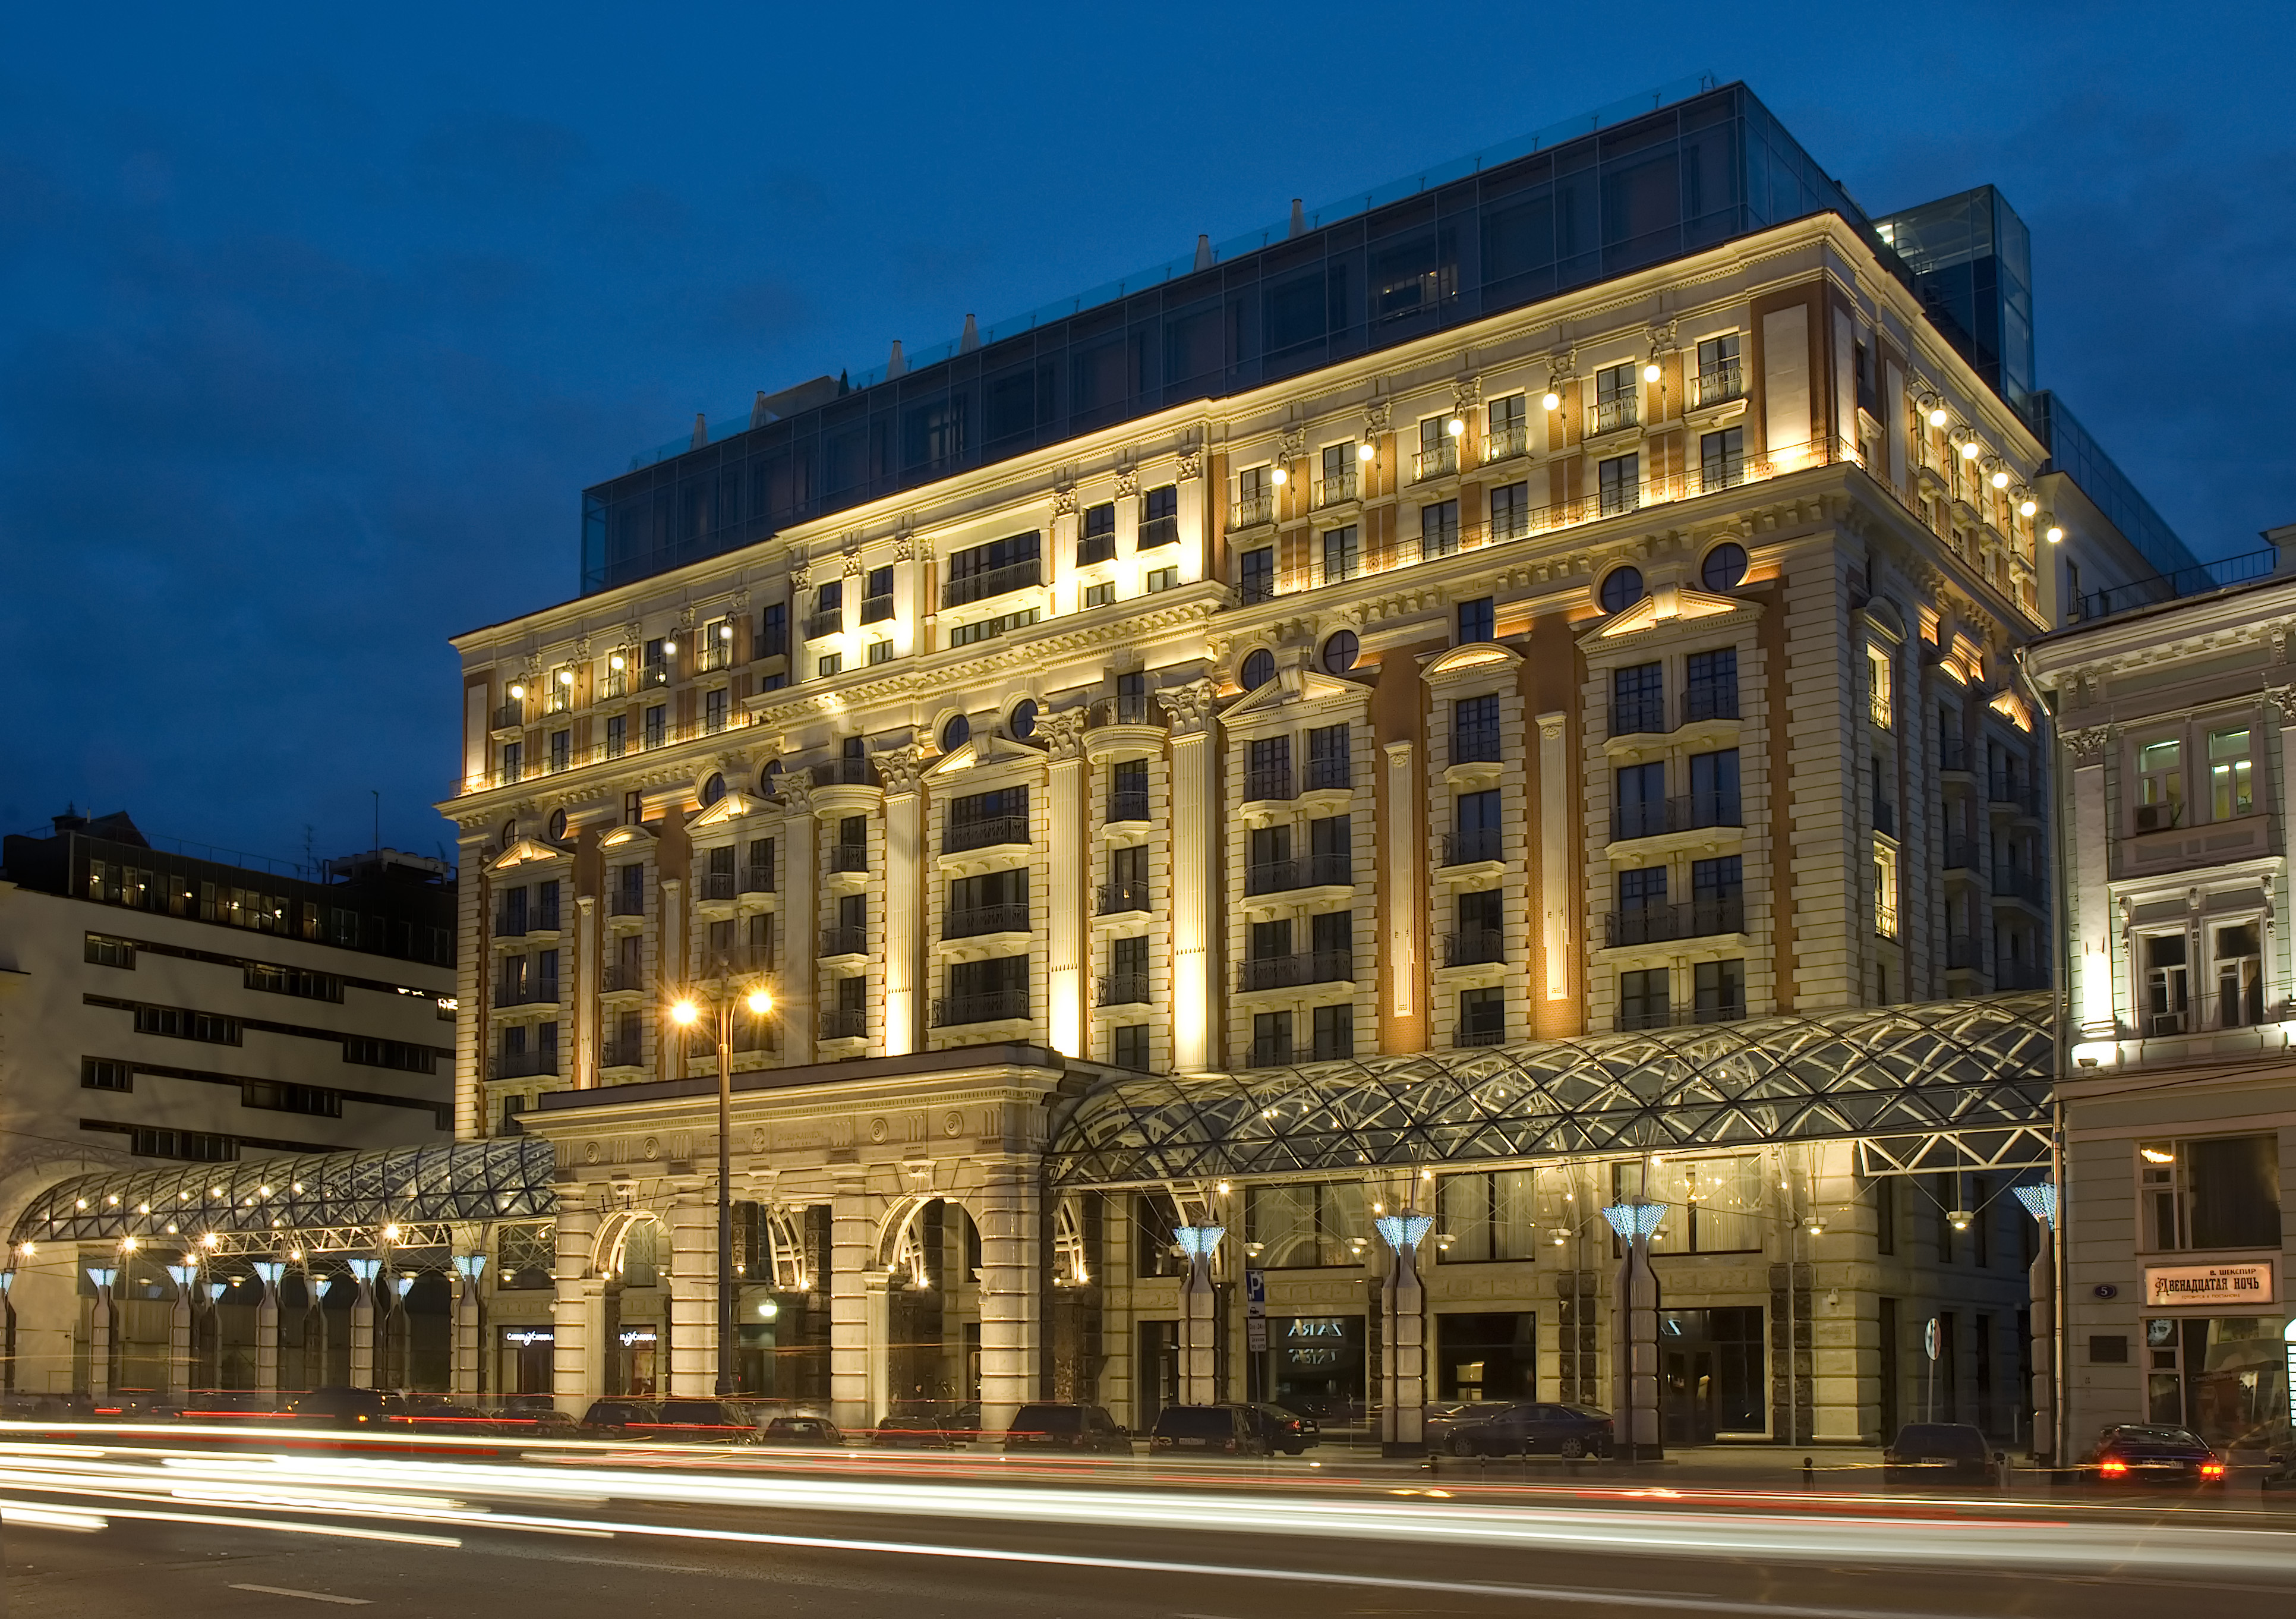 صورة فندق ريتز كارلتون اسطنبول